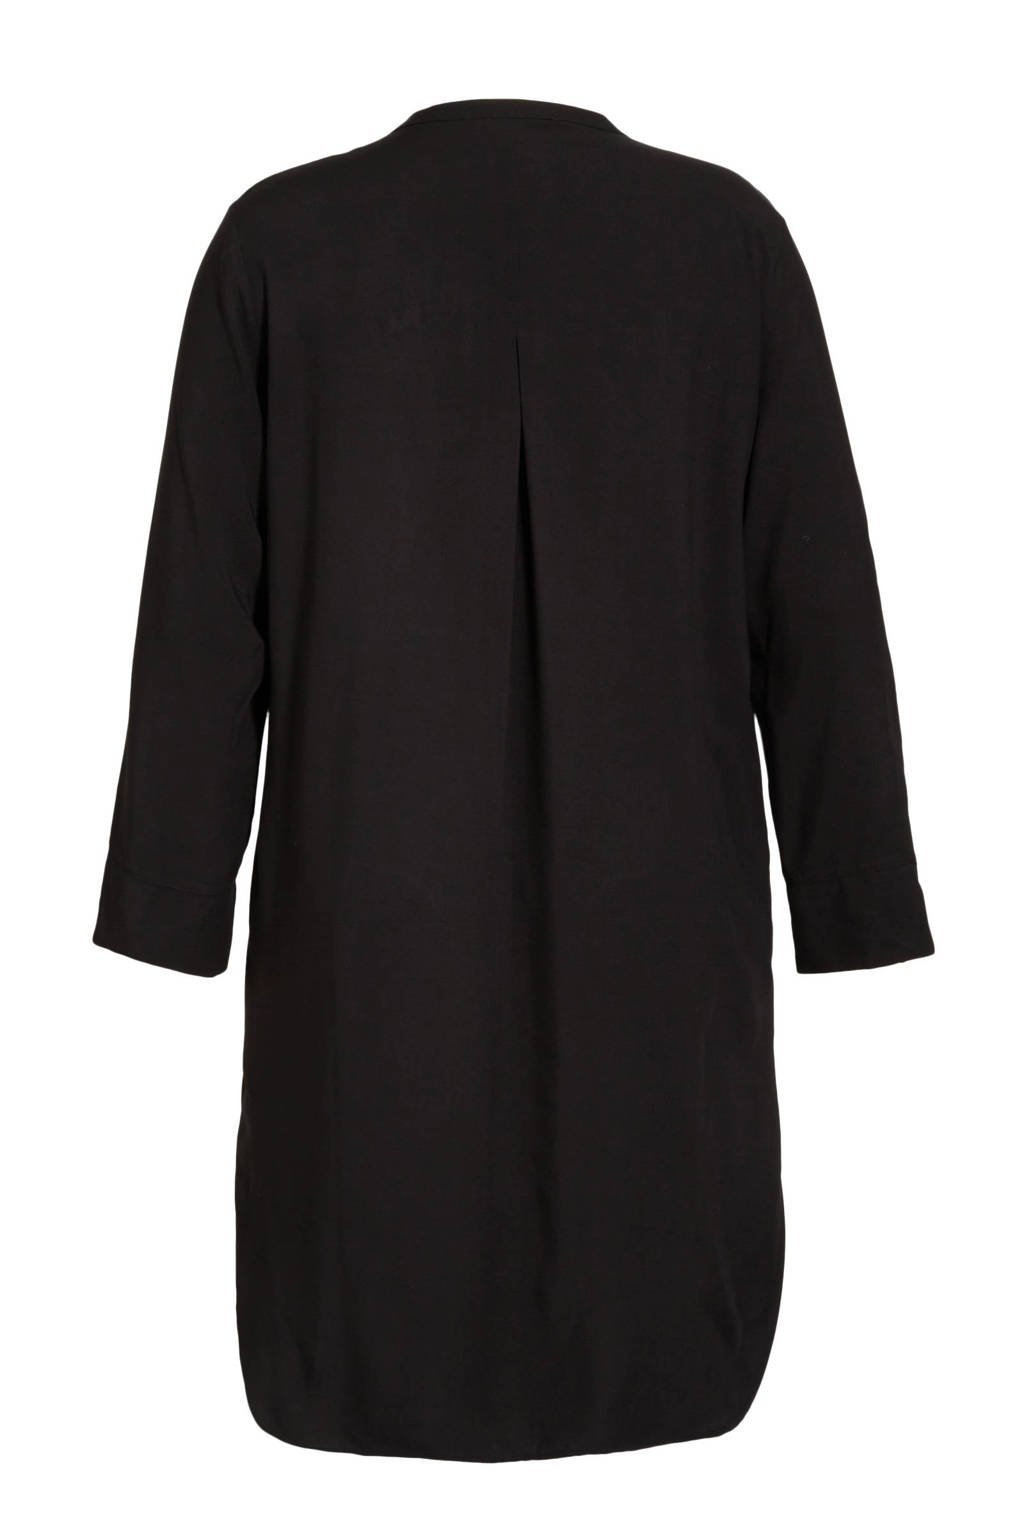 rechtdoor Stamboom Bron GREAT LOOKS Lange blouse zwart | wehkamp